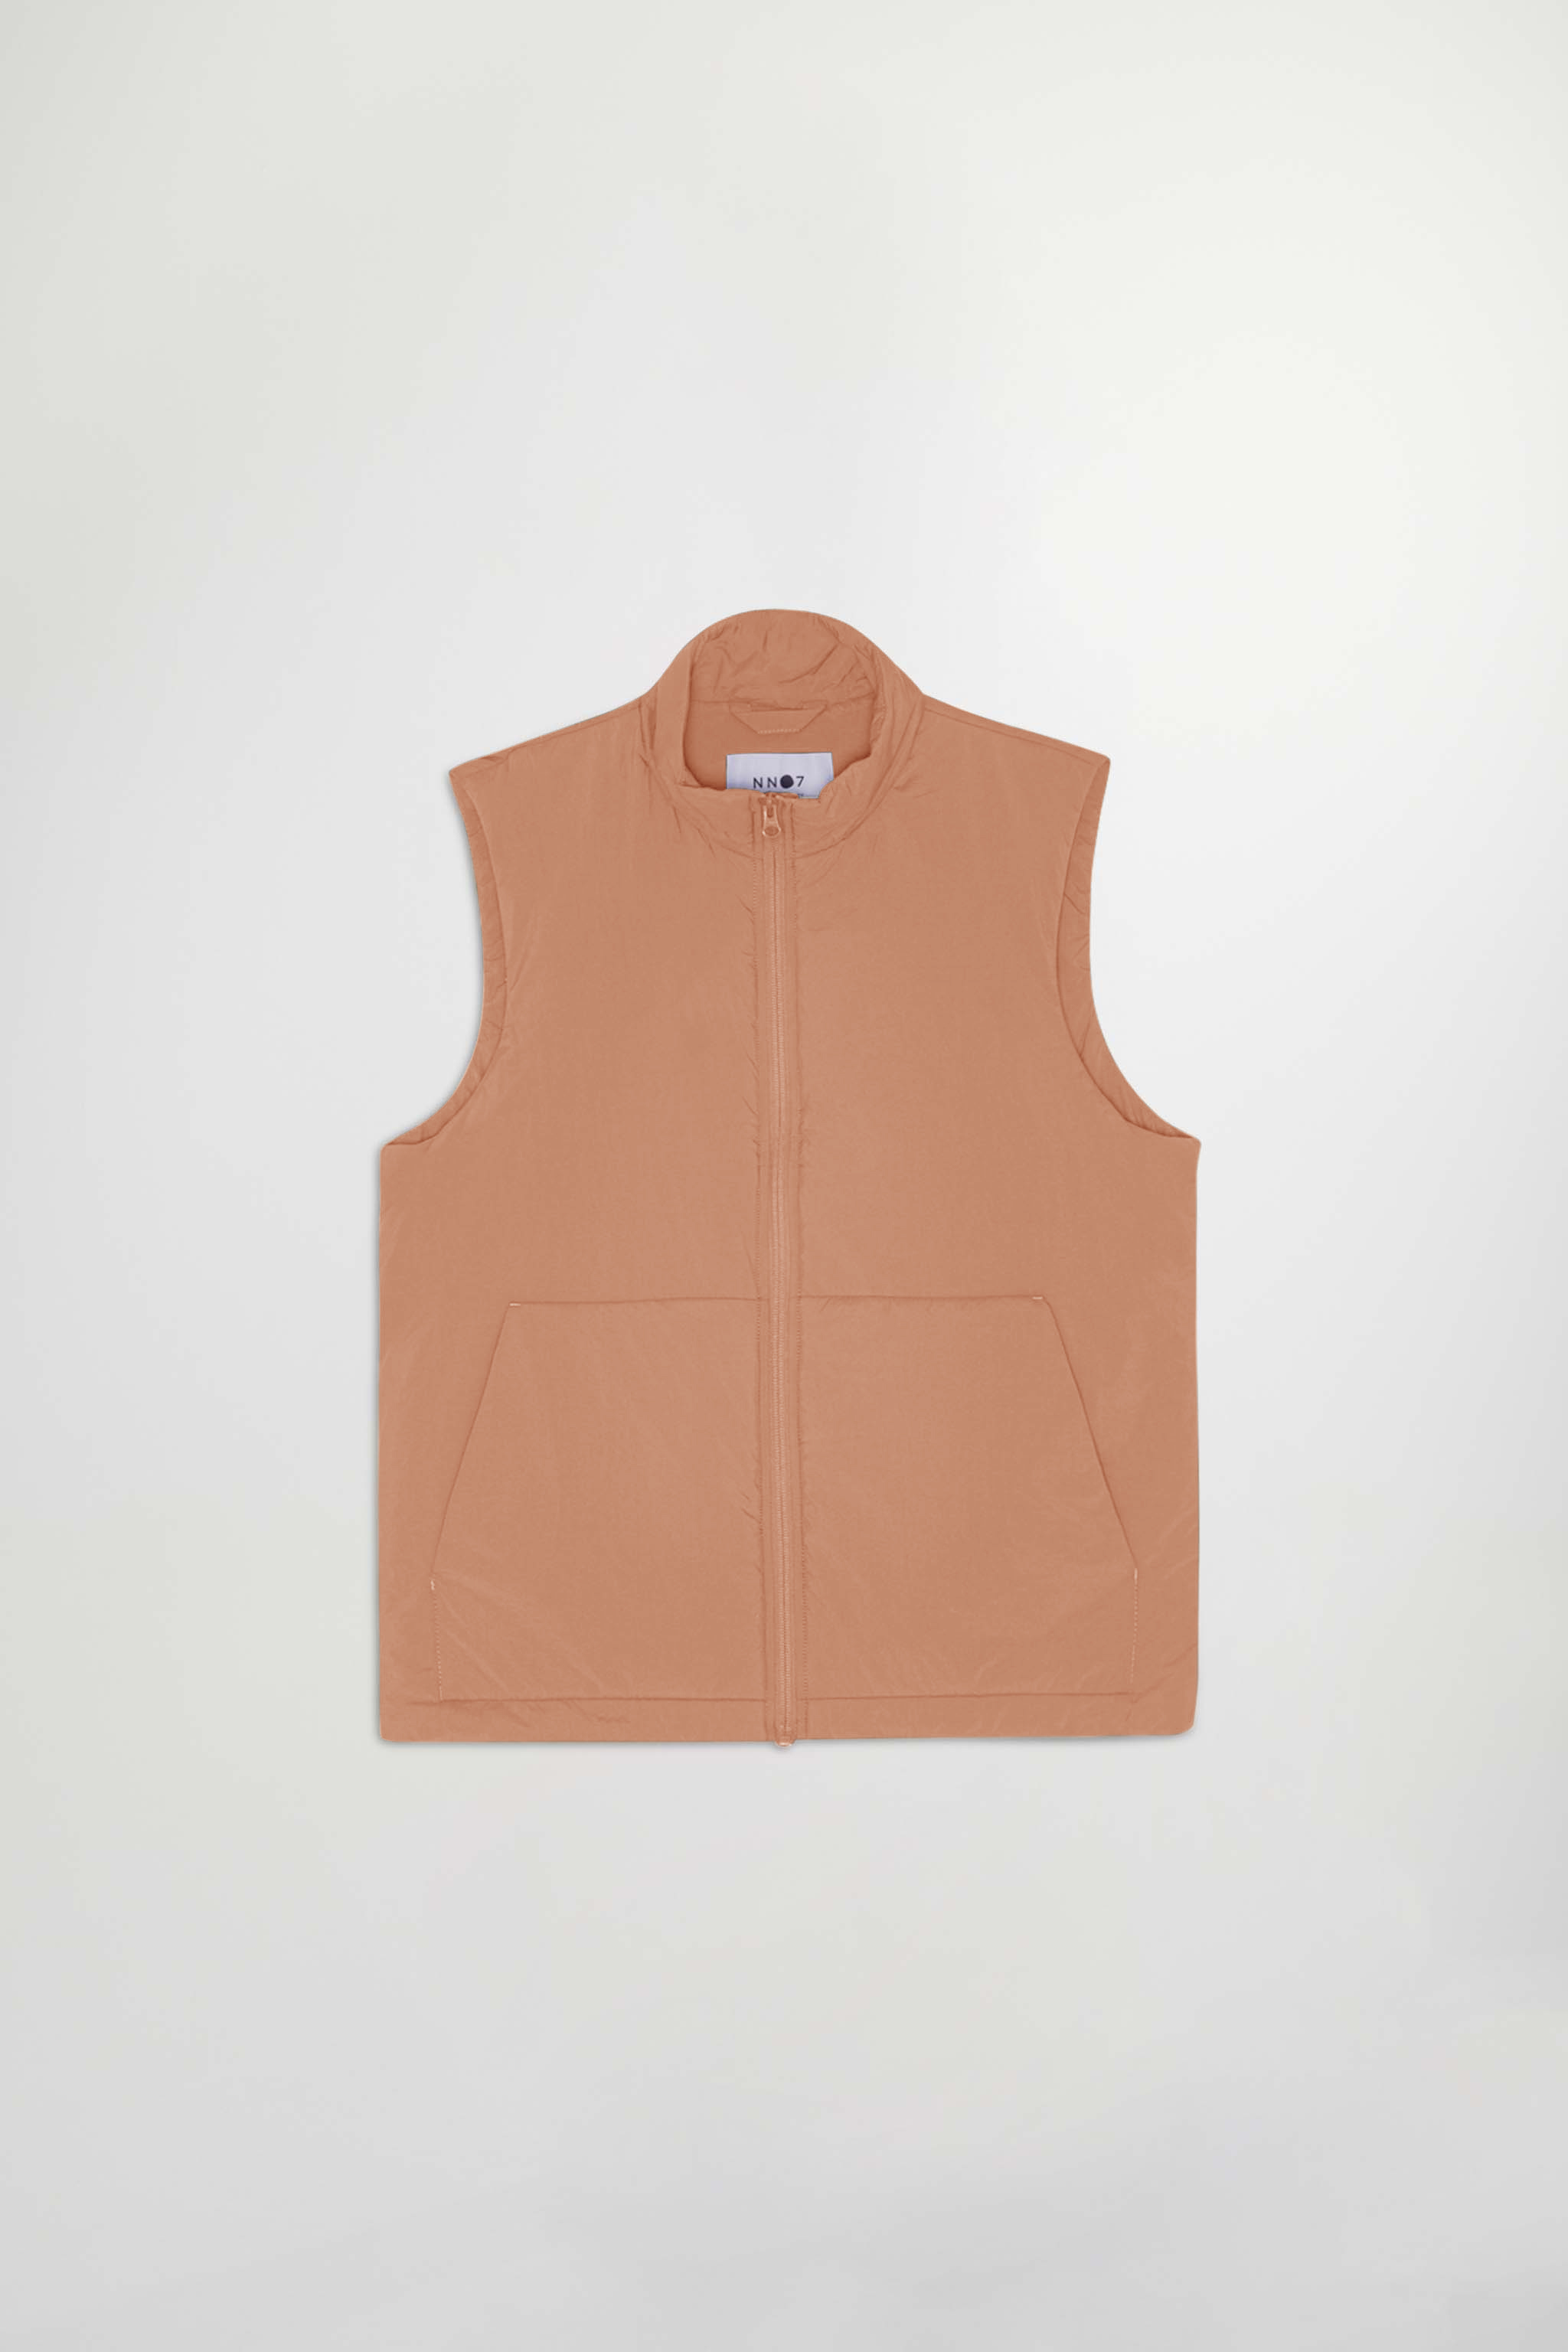 Verve 8245 men's vest - Brown - Buy online at NN.07®